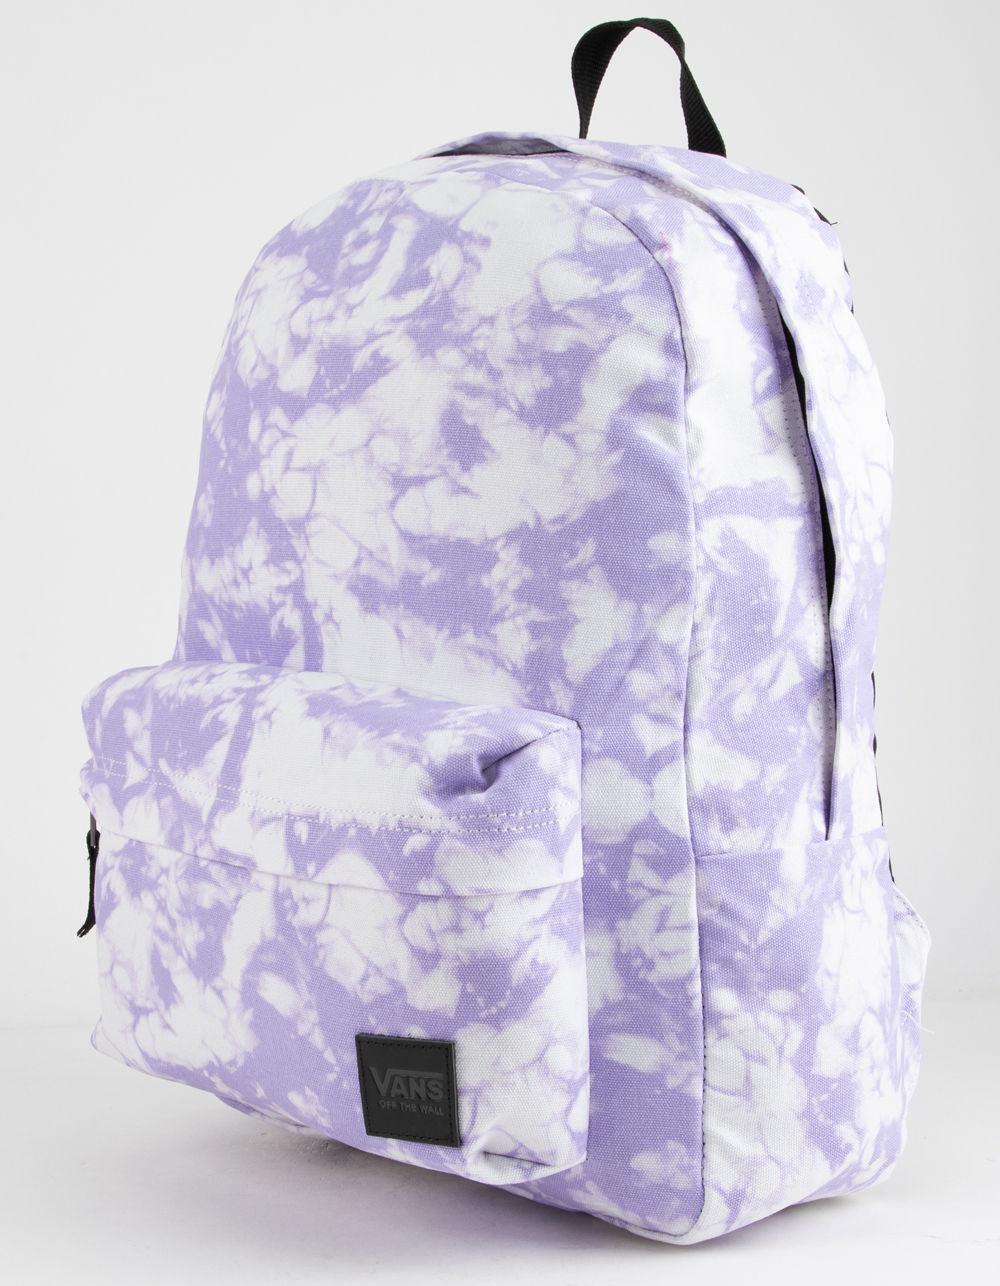 vans cloud backpack